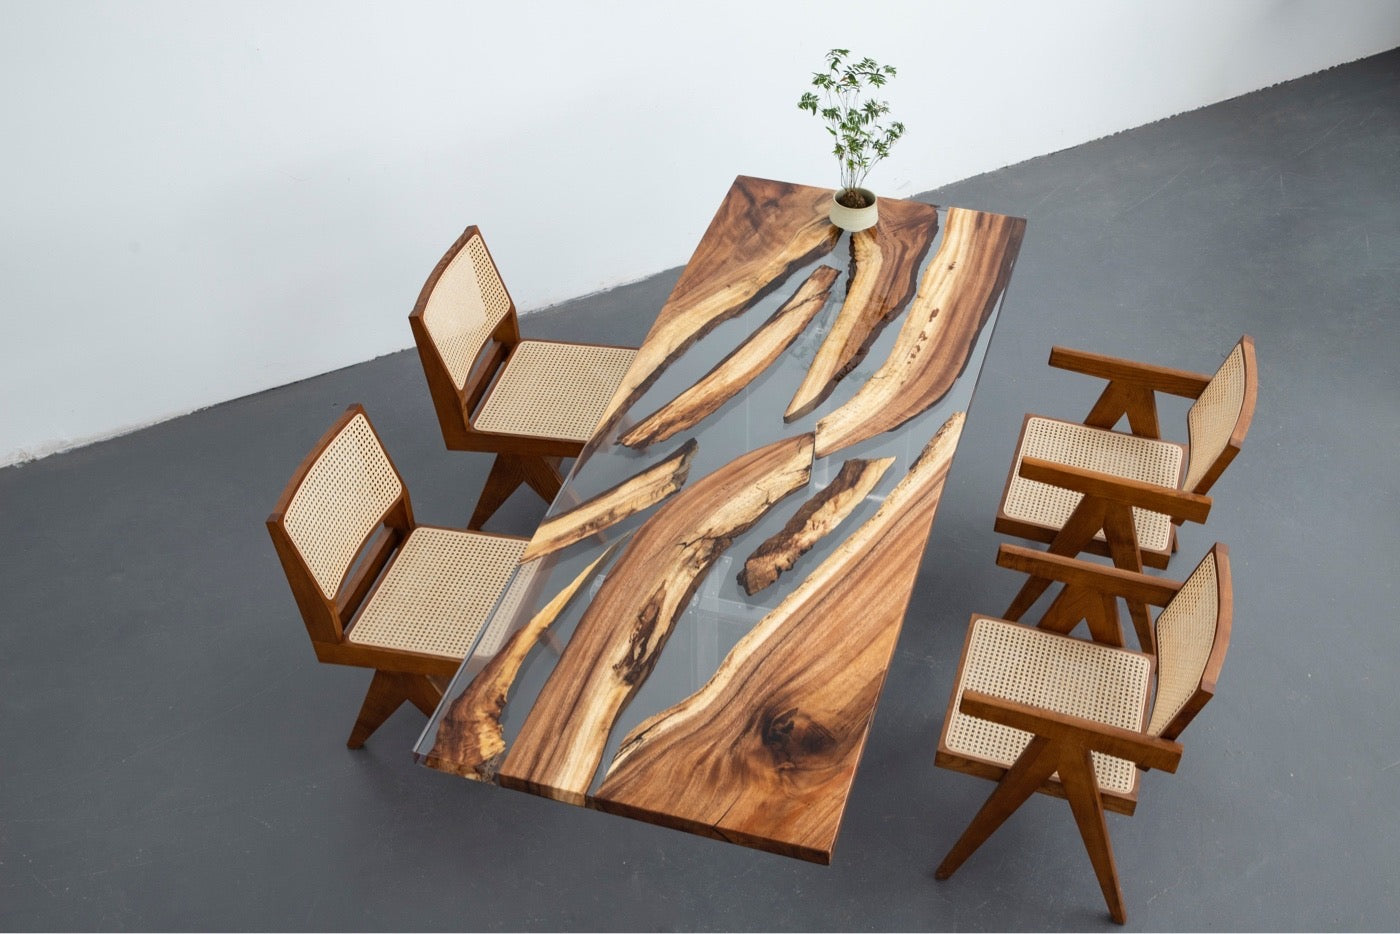 グローエポキシ樹脂テーブル、アートレジンエポキシ樹脂、エポキシ樹脂アートアイデア、エポキシ樹脂木製テーブル